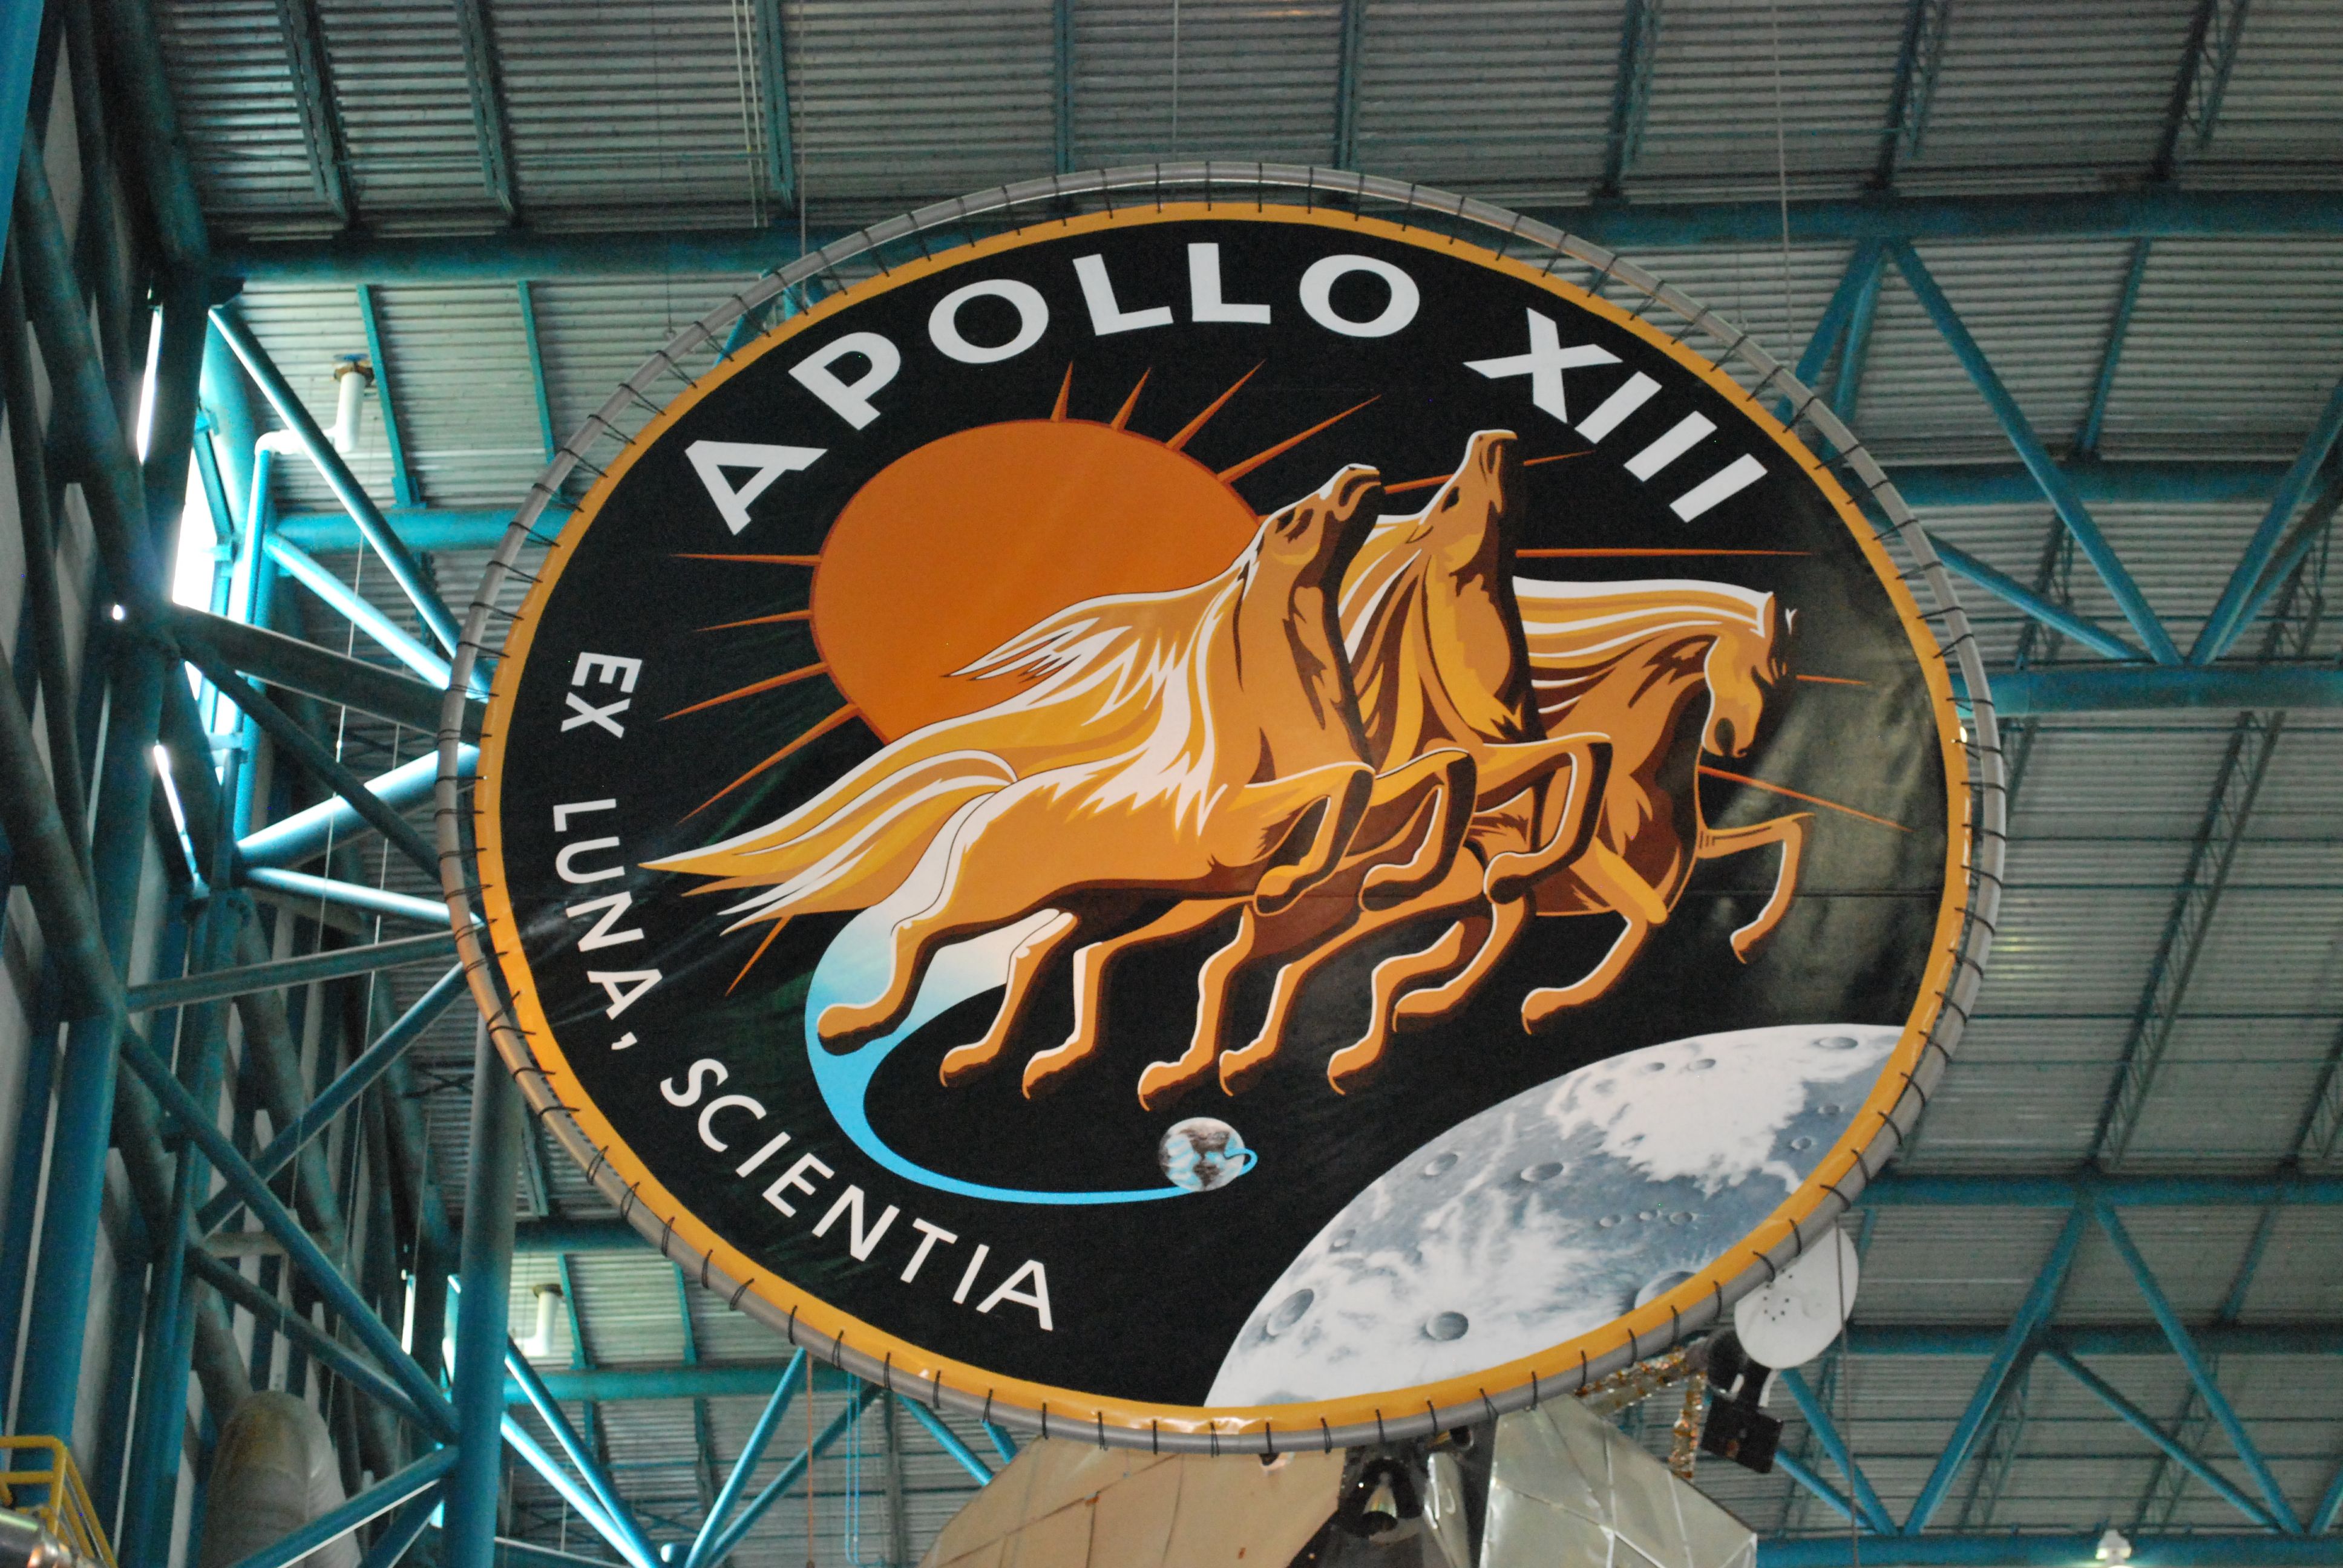 Apollo 13 Wallpaper Image